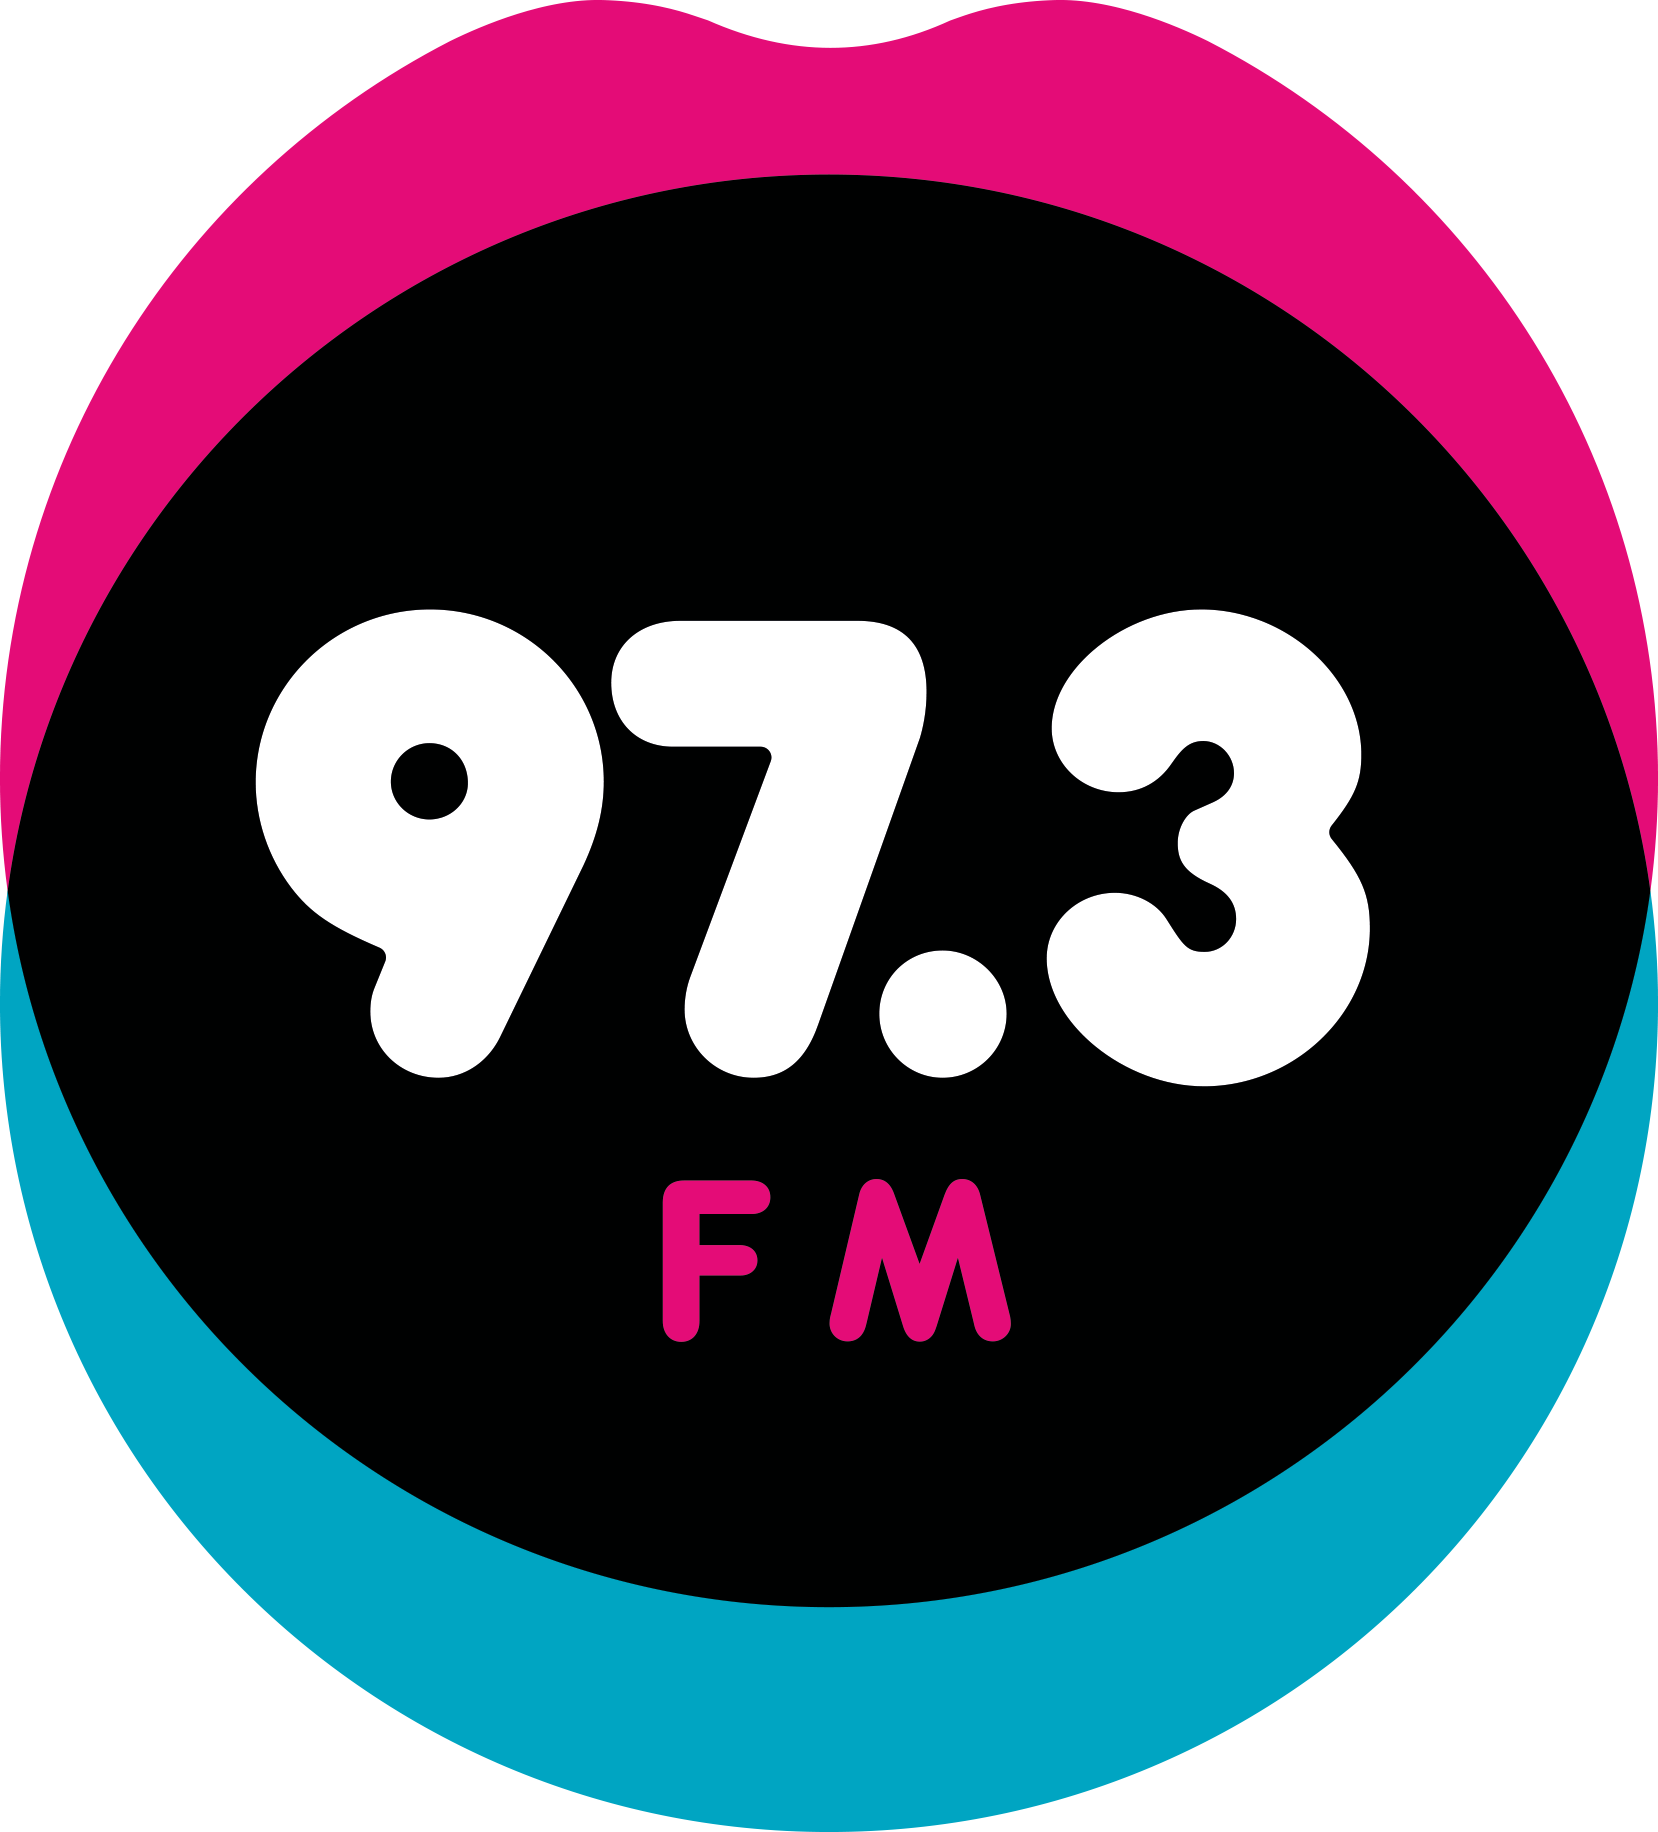 97.3FM